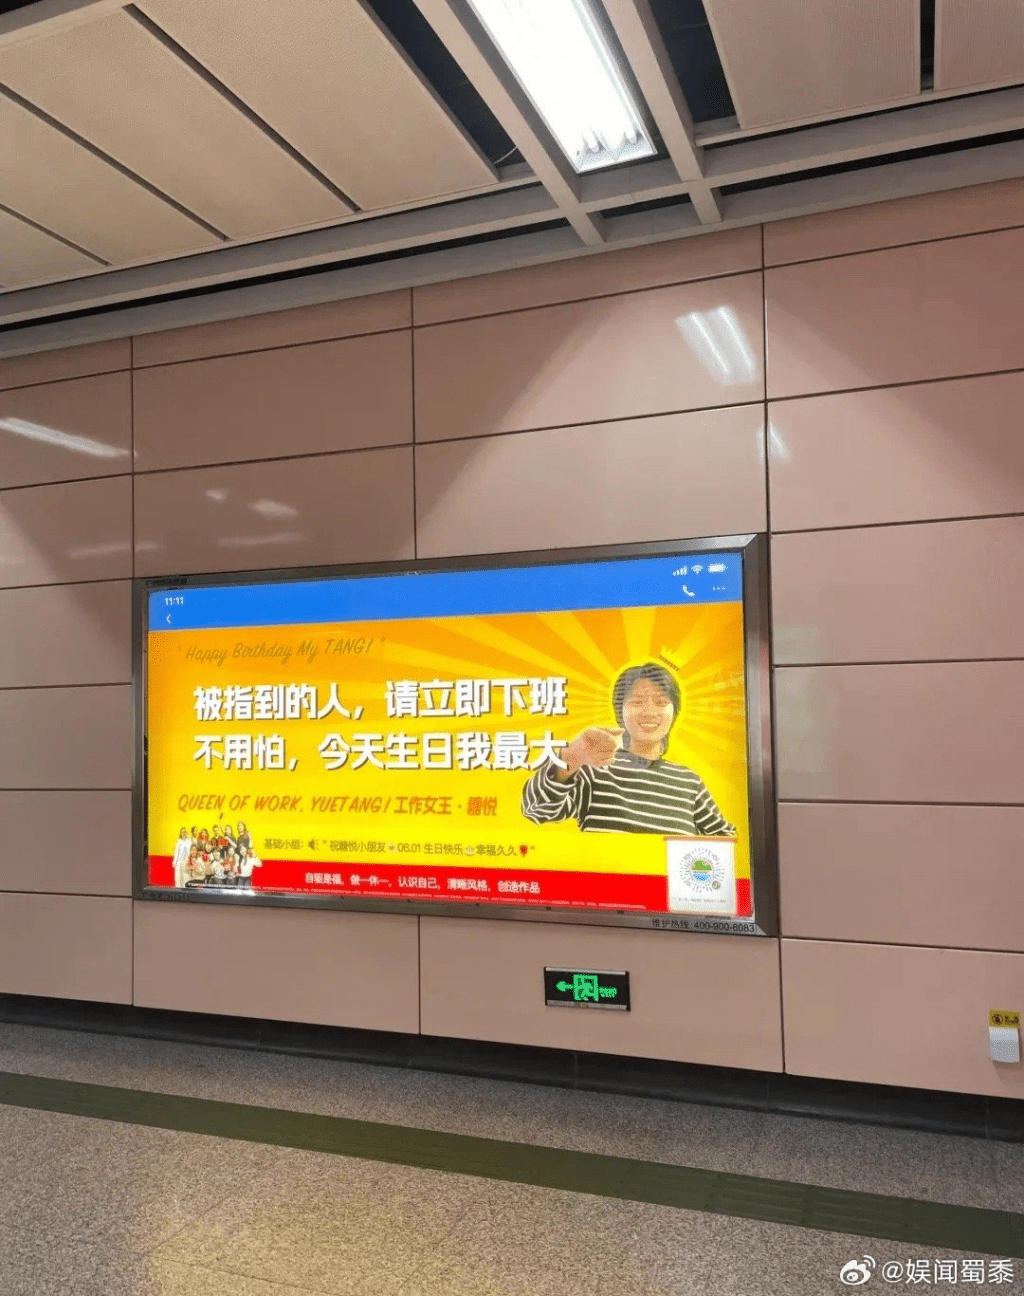 祝賀生日的廣告也出現在地鐵廣告牌上。